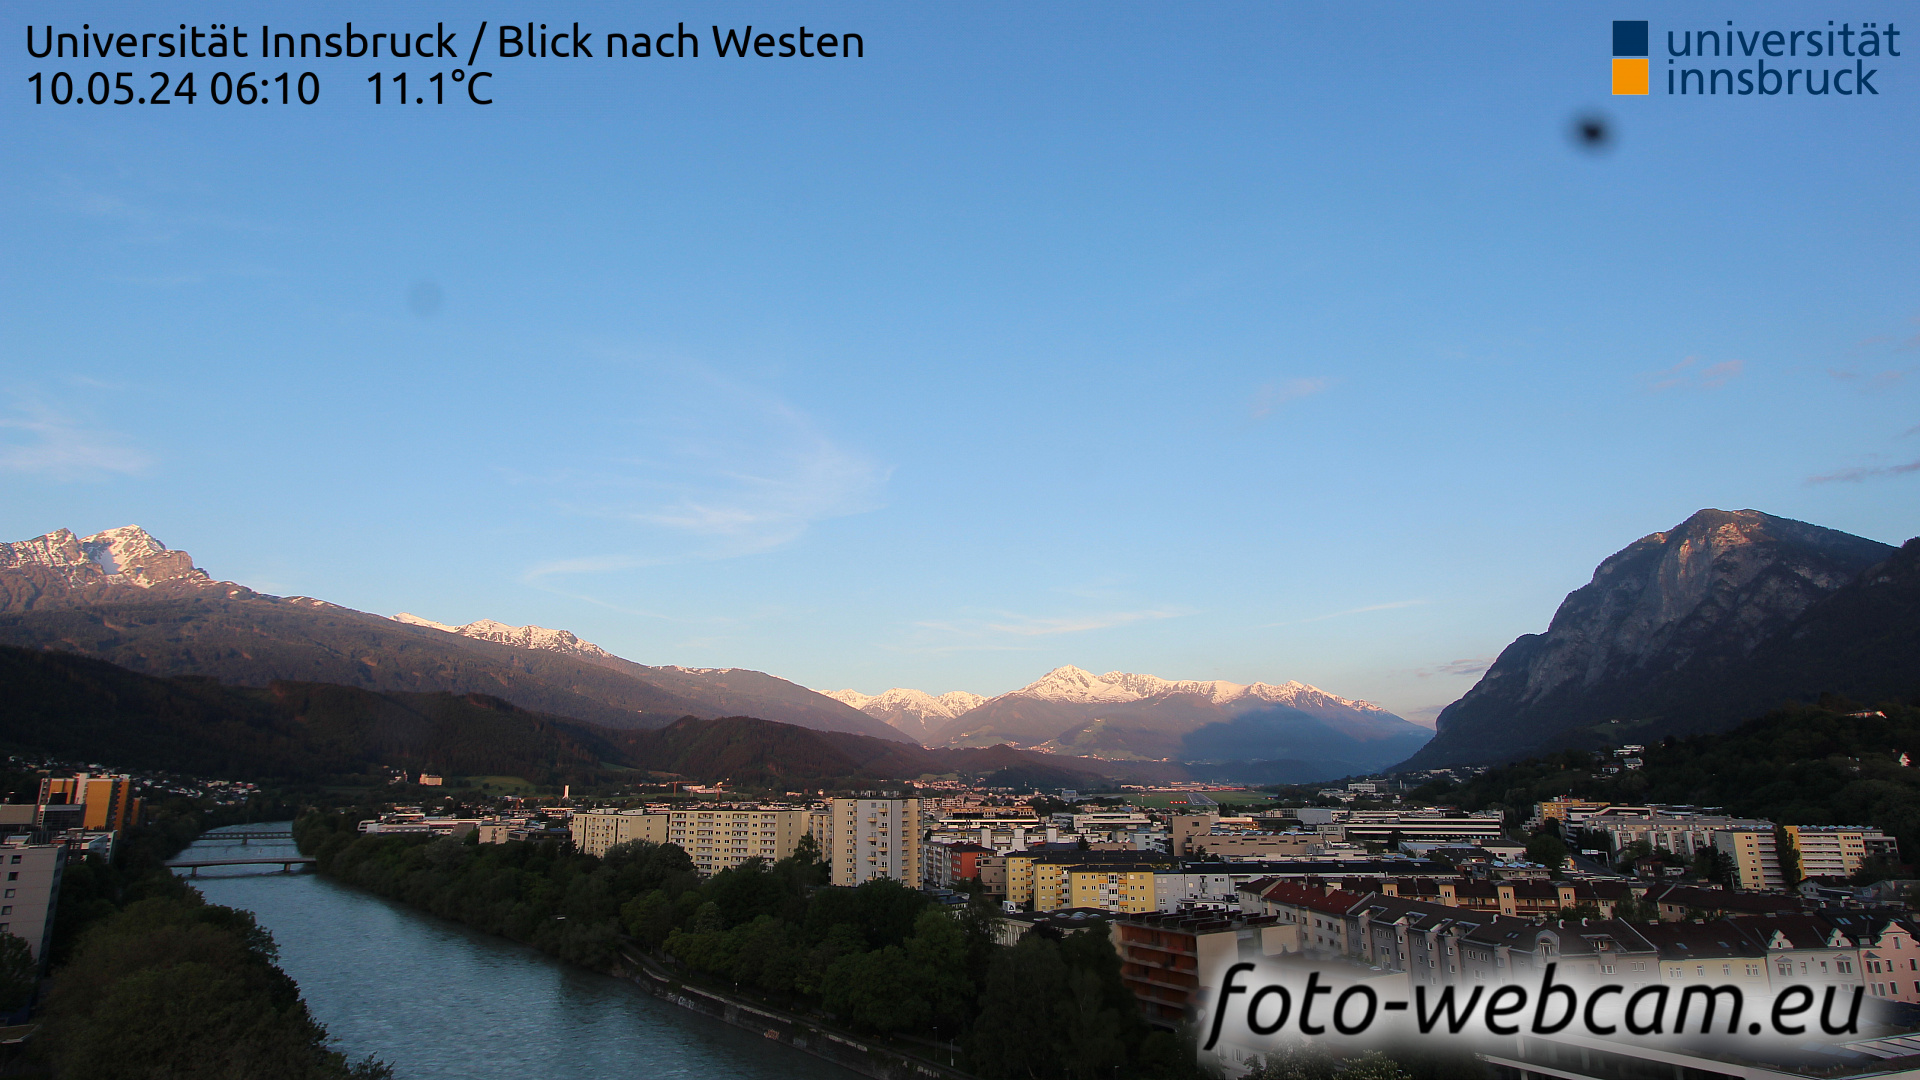 Innsbruck Dom. 06:17